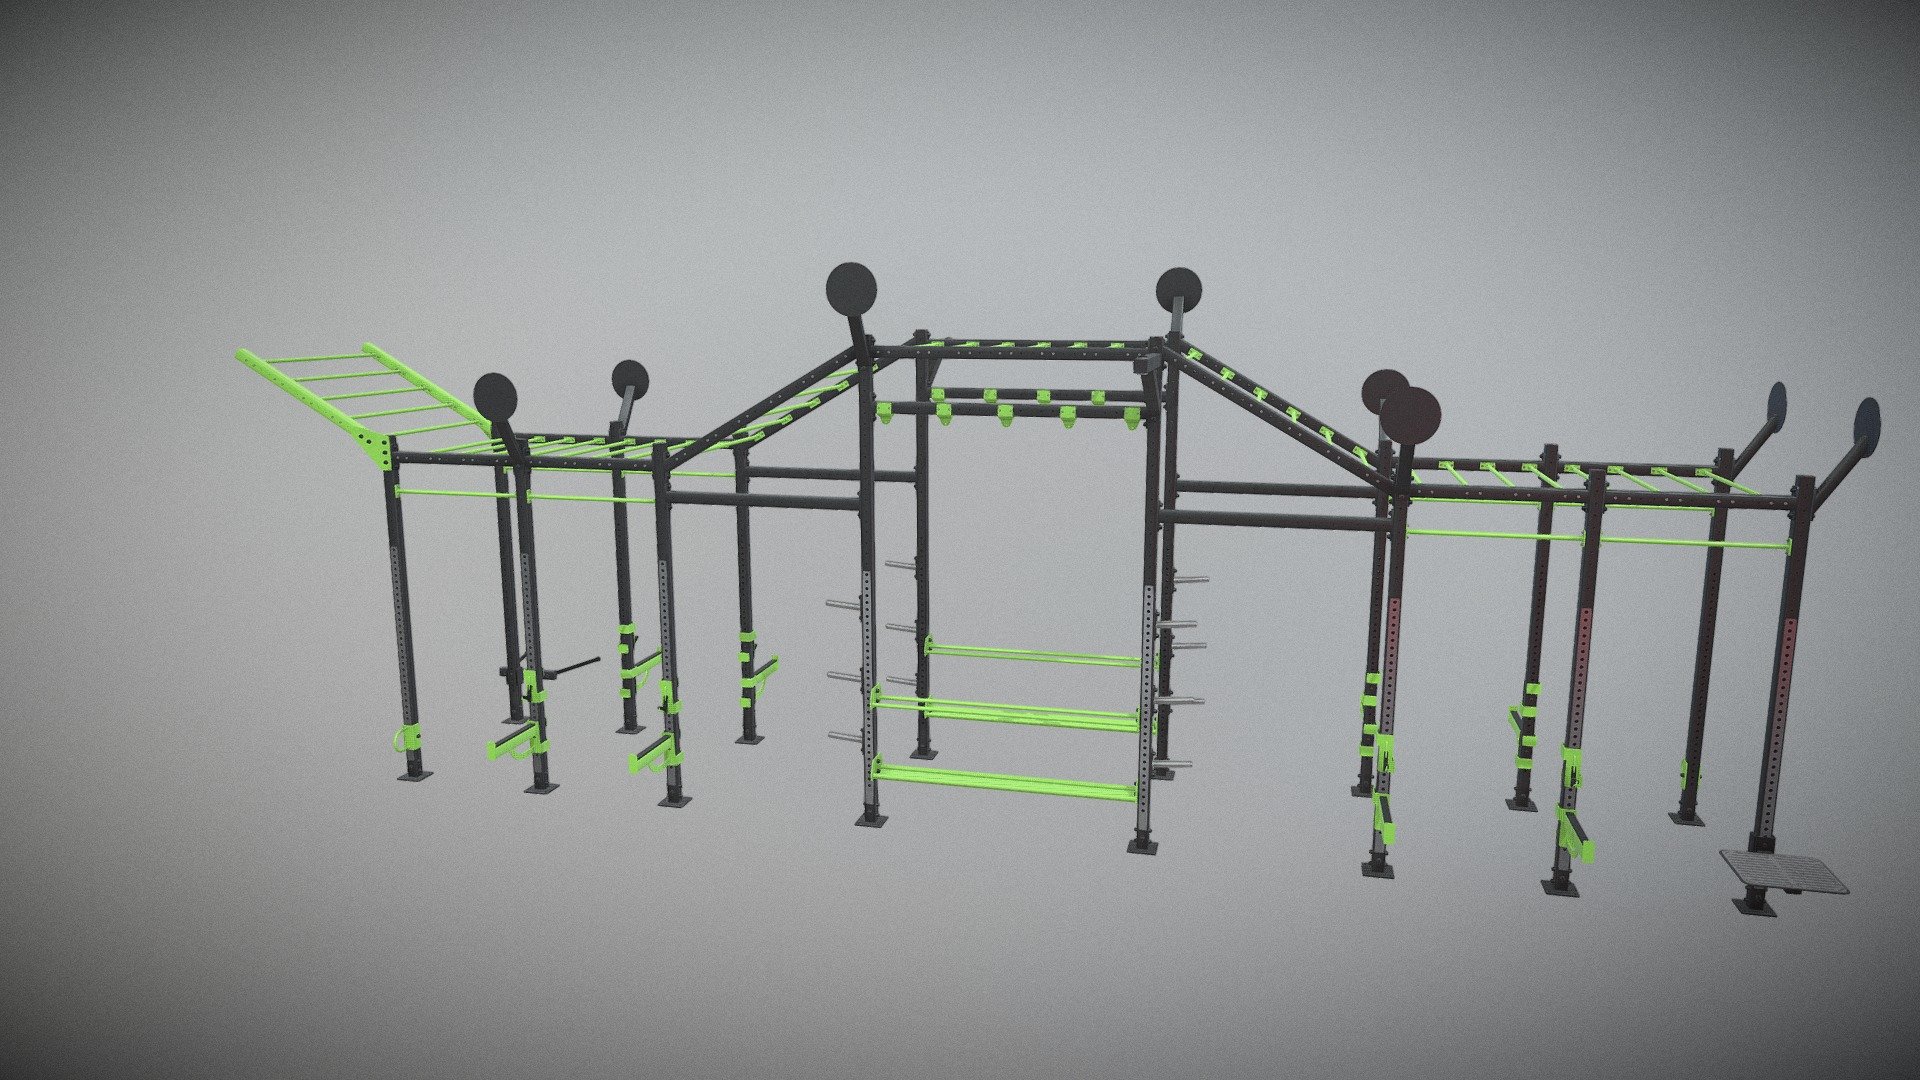 http://dhz-fitness.de/en/crosstraining#E6205 - CROSSTRAINING TOWER - 3D model by supersport-fitness 3d model